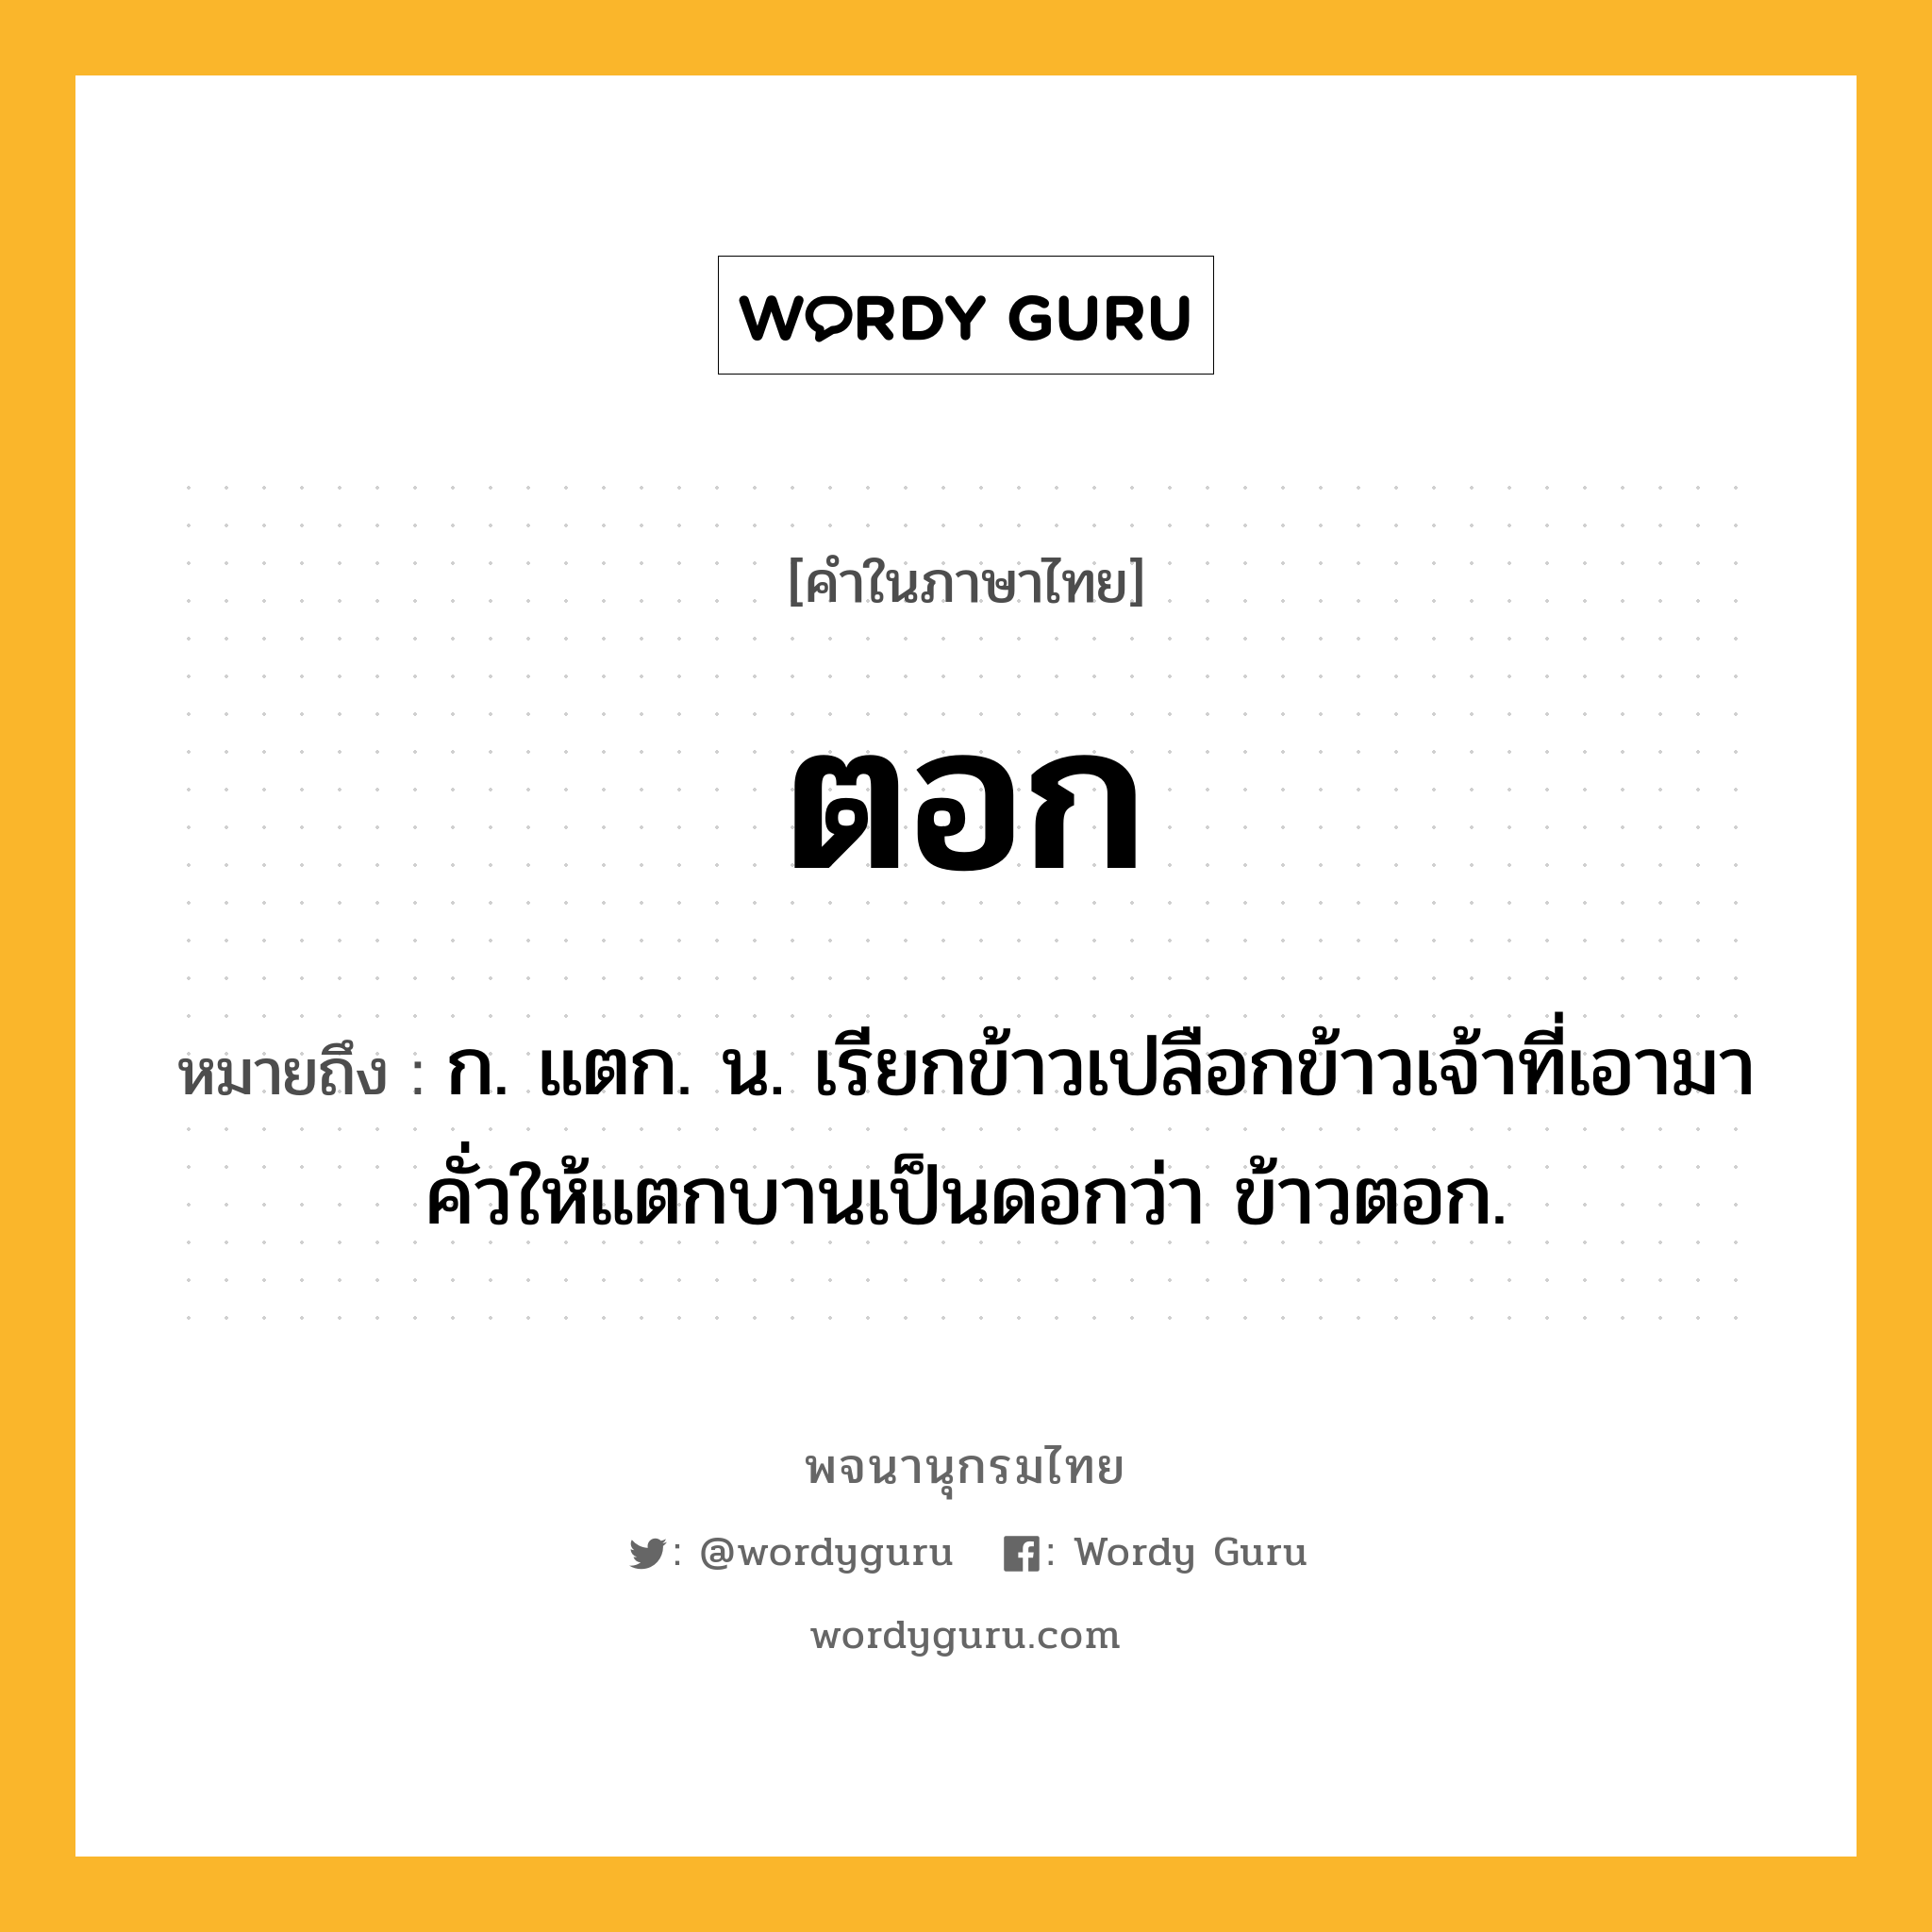 ตอก ความหมาย หมายถึงอะไร?, คำในภาษาไทย ตอก หมายถึง ก. แตก. น. เรียกข้าวเปลือกข้าวเจ้าที่เอามาคั่วให้แตกบานเป็นดอกว่า ข้าวตอก.